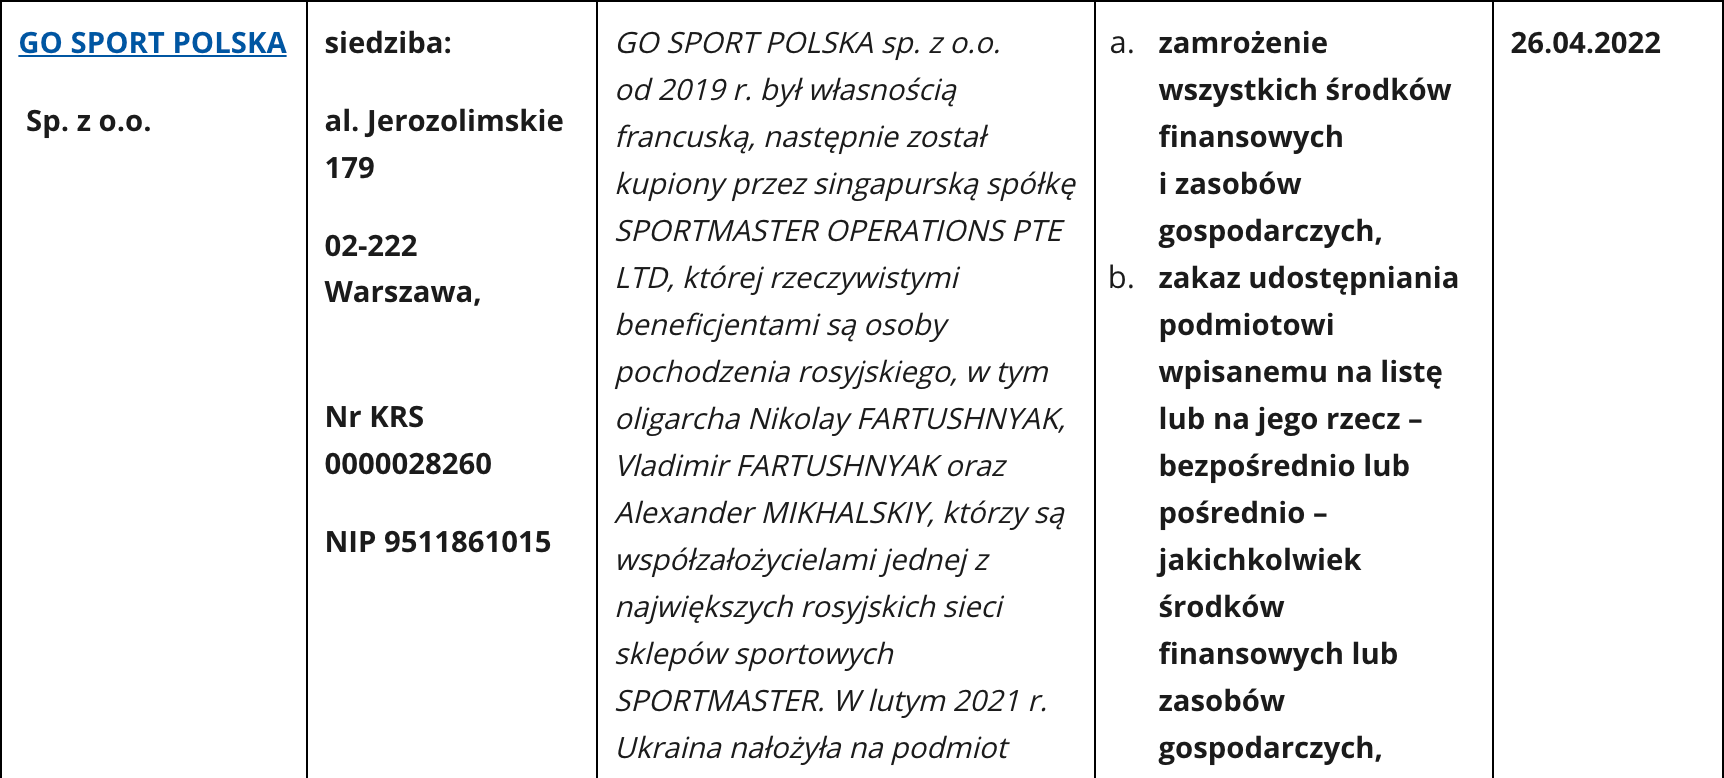 Entry regarding Go Sport Polska on the sanctions list